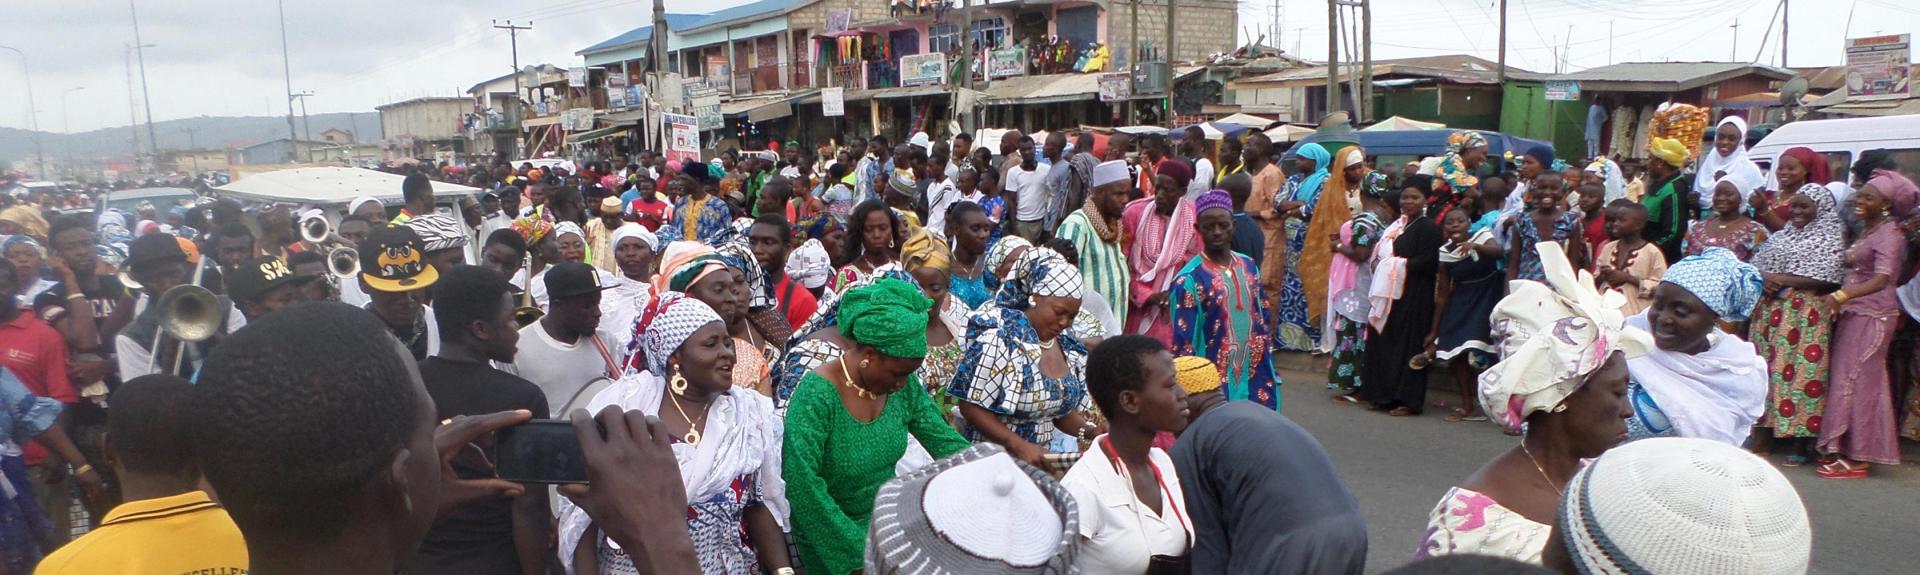 Eid Al-Fitr parade in Ghana, 2015